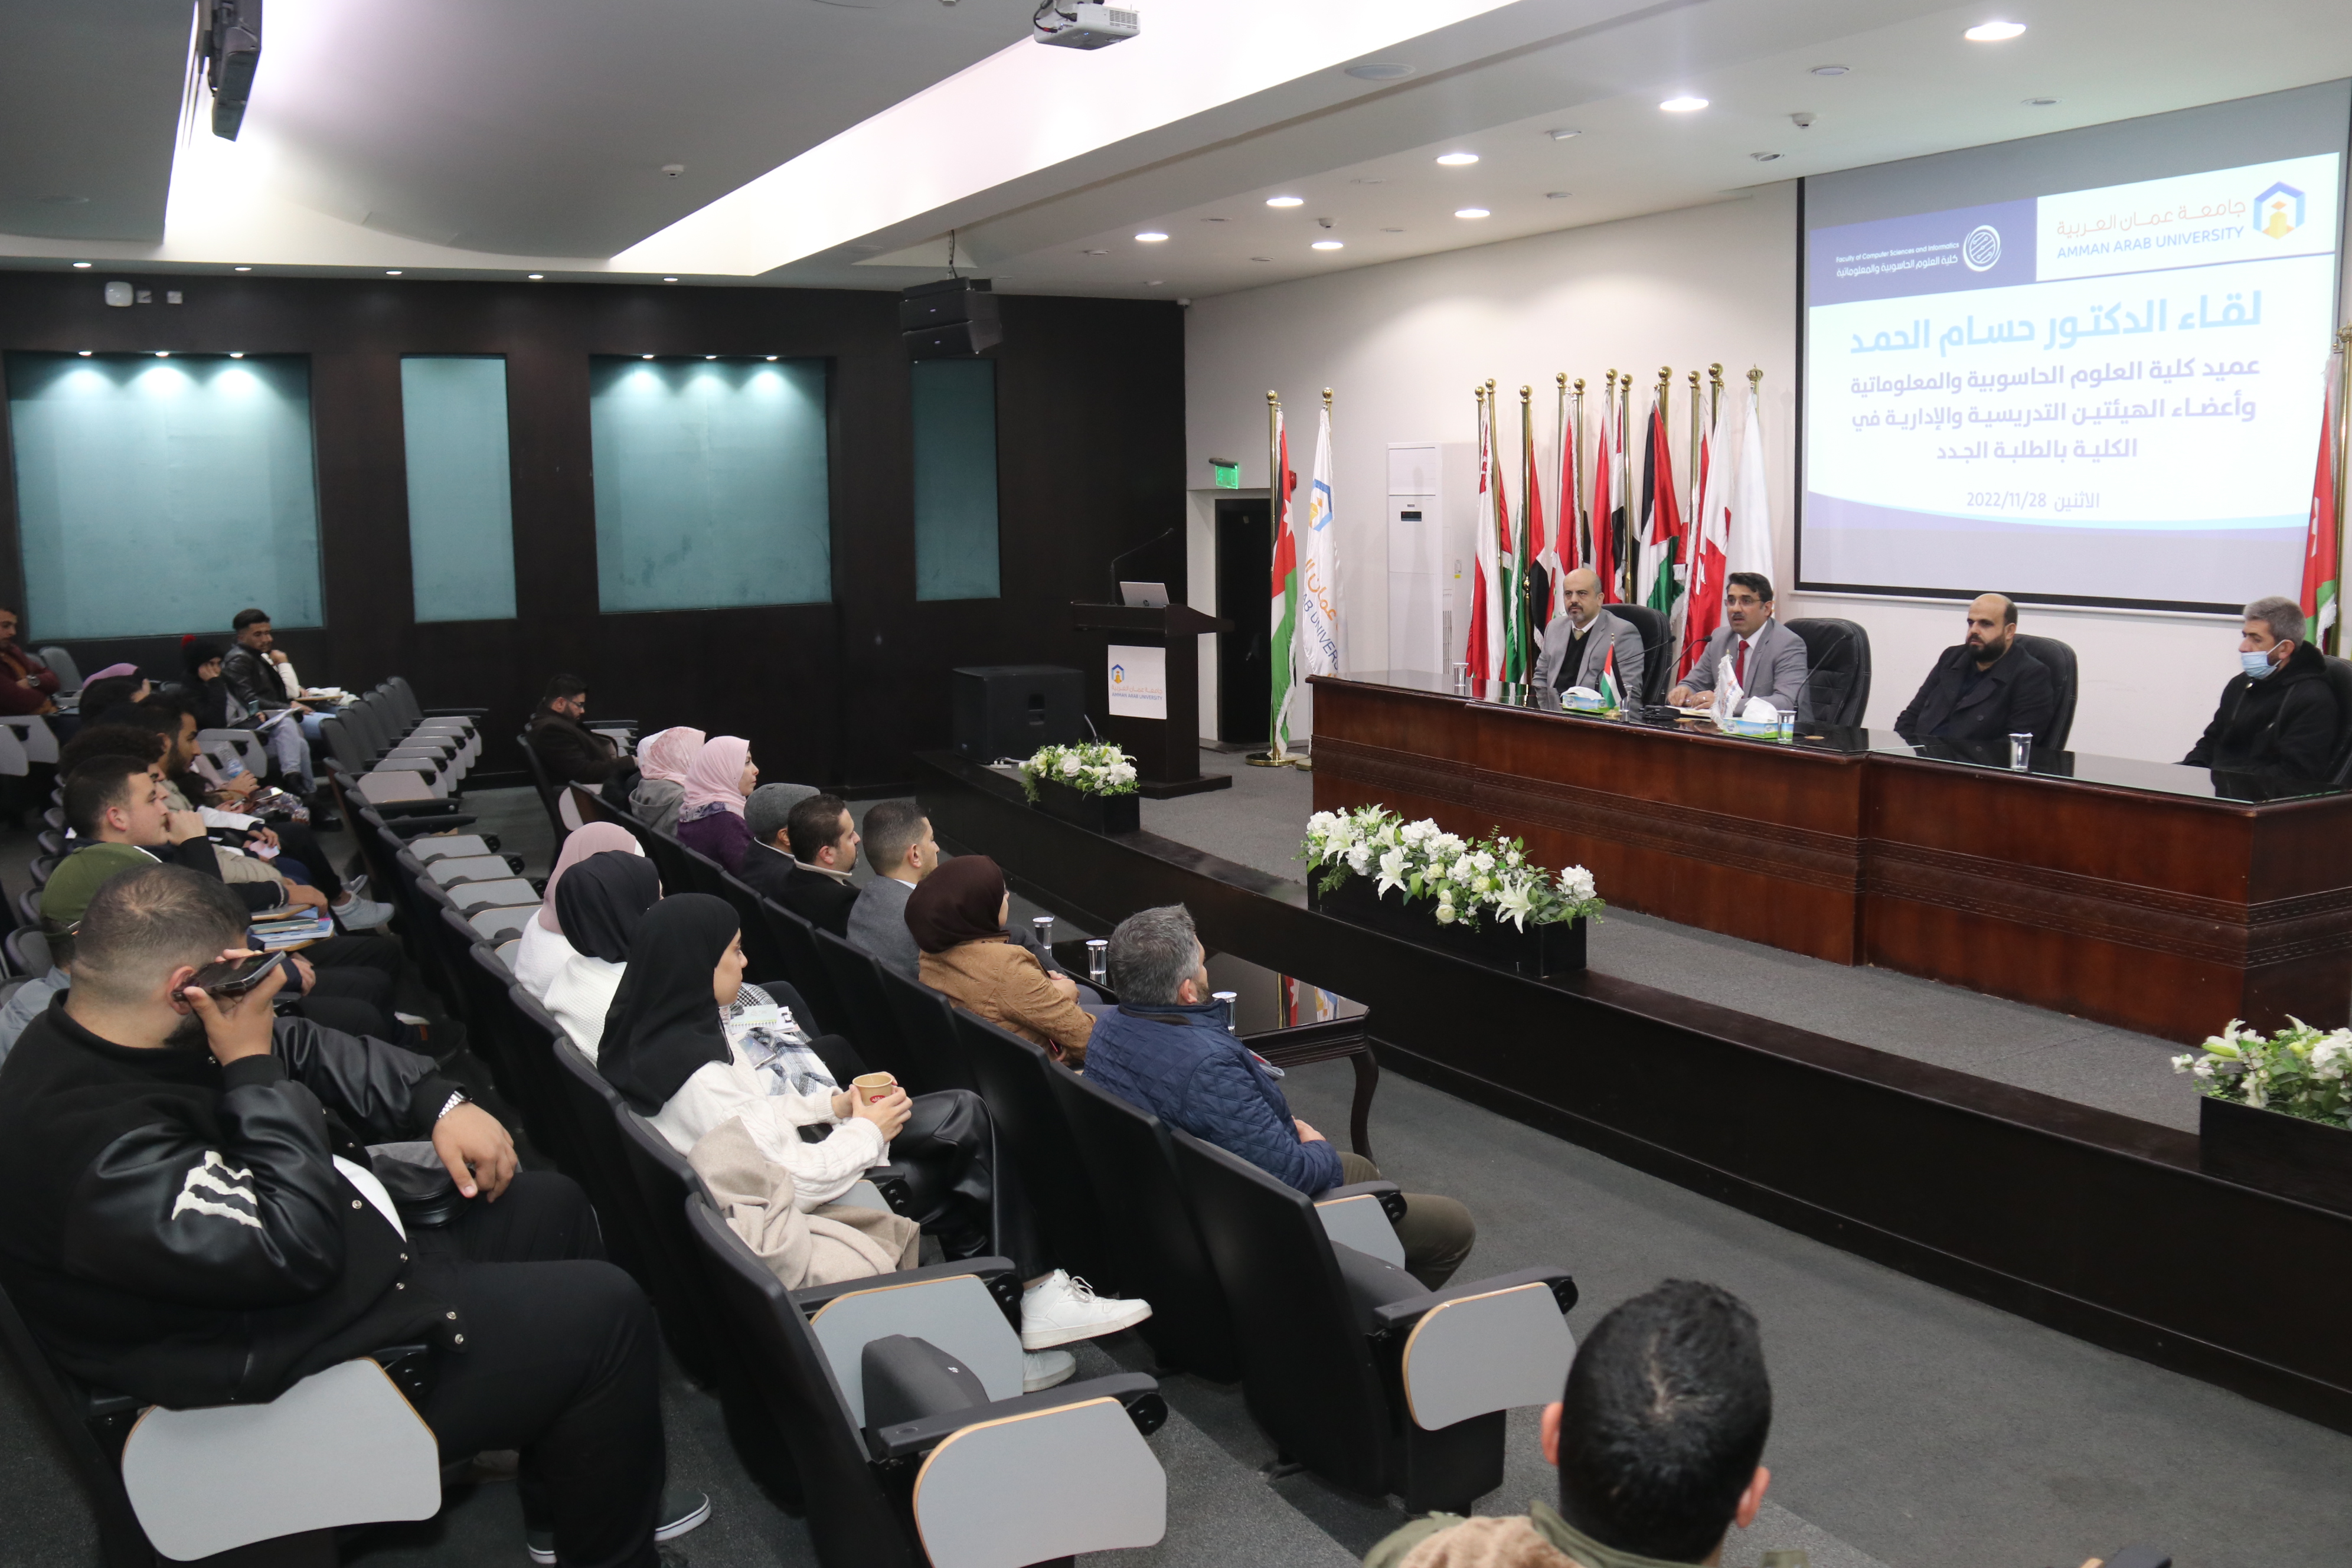 العلوم الحاسوبية والمعلوماتية "عمان العربية" تدعم مشاركات طلبتها محلياً وإقليمياً ودولياً2